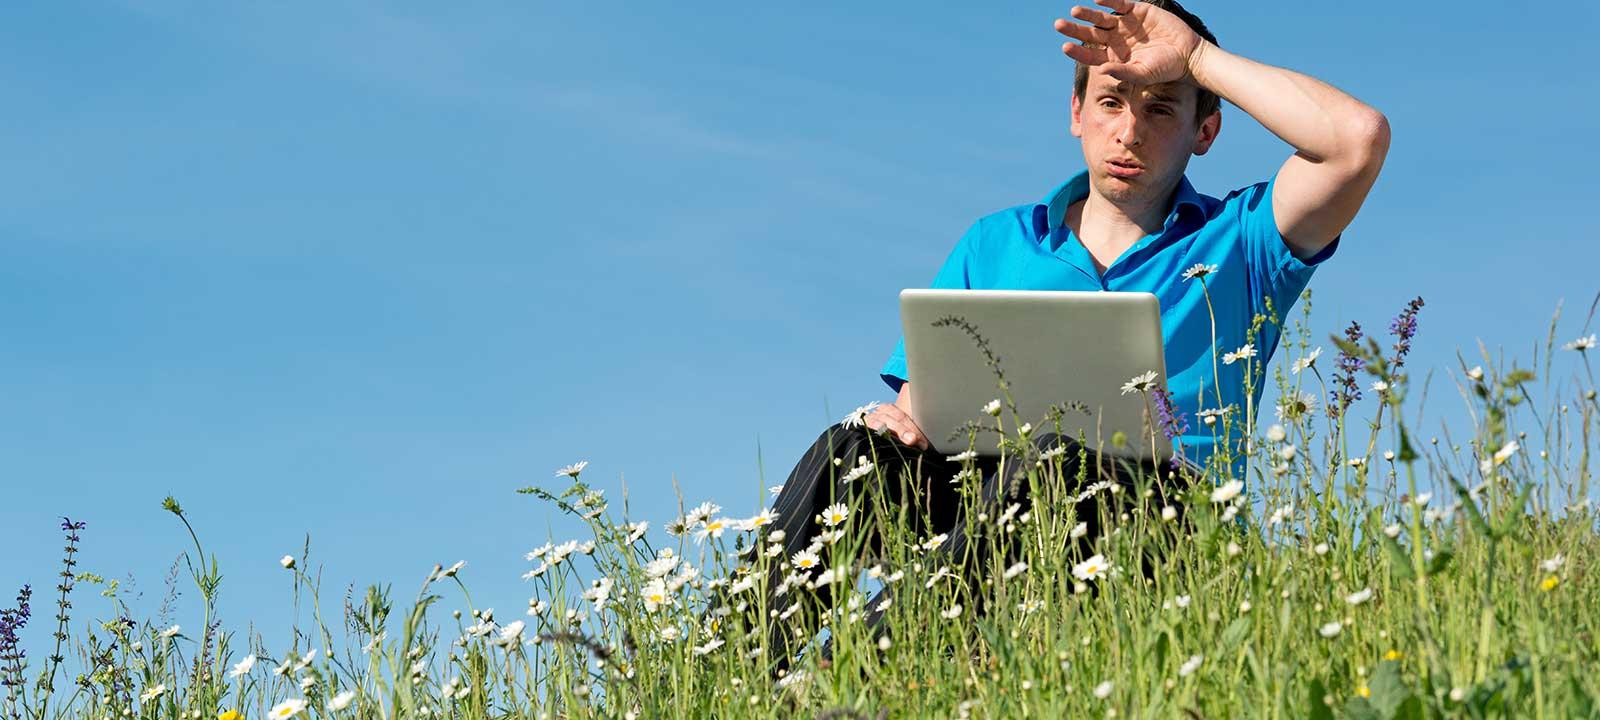 外面有个男人，坐在田野里拿着笔记本电脑，擦着额头上的汗